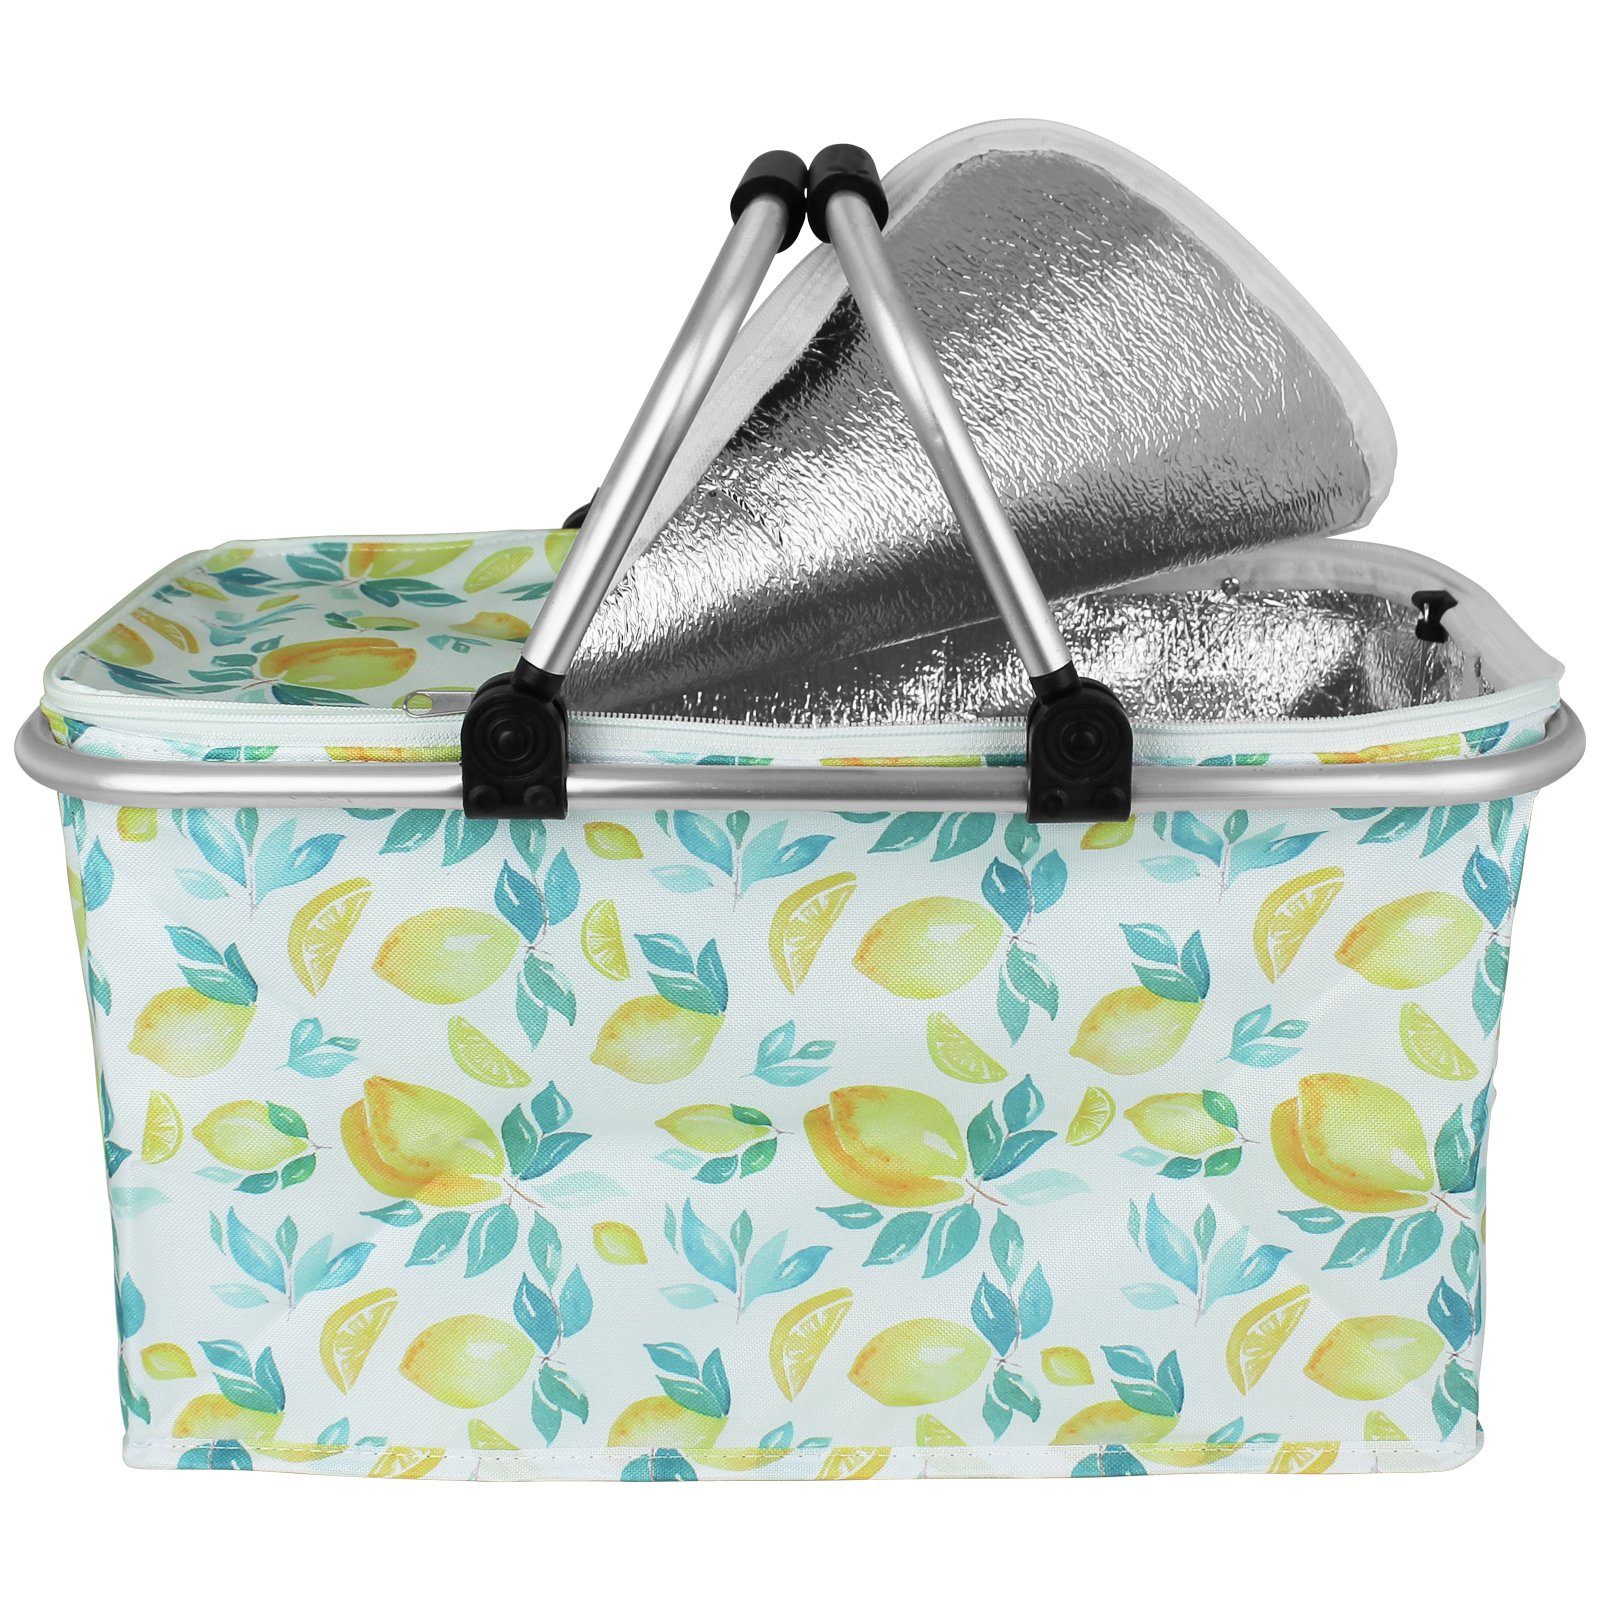 Einkaufskorb Kühltasche Koopman Thermobox Einkaufstasche Zitrone Kühlelement Strandkorb mit Coolbox Kühlbox Farbwahl,